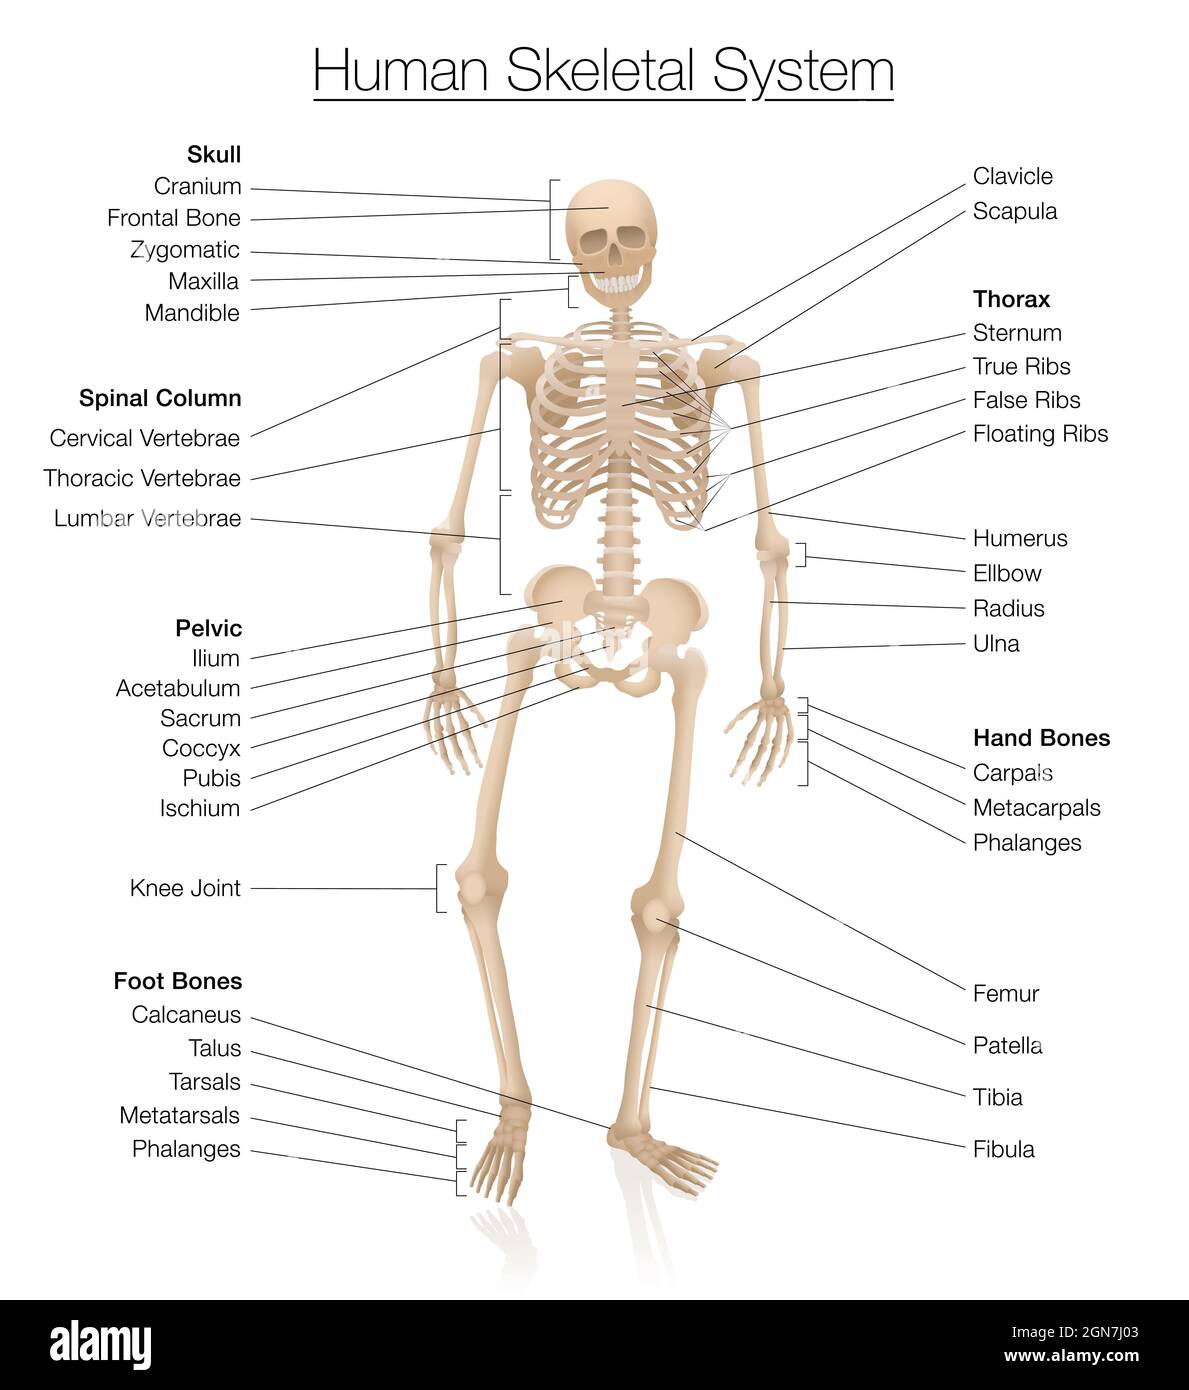 Diagramm des Skelettsystems. Menschliches Skelett, das mit den wichtigsten  Knochen wie Schädel, Wirbelsäule, Becken, Thorax, Rippen, Brustbein, Hand-  und Fußknochen Stockfotografie - Alamy